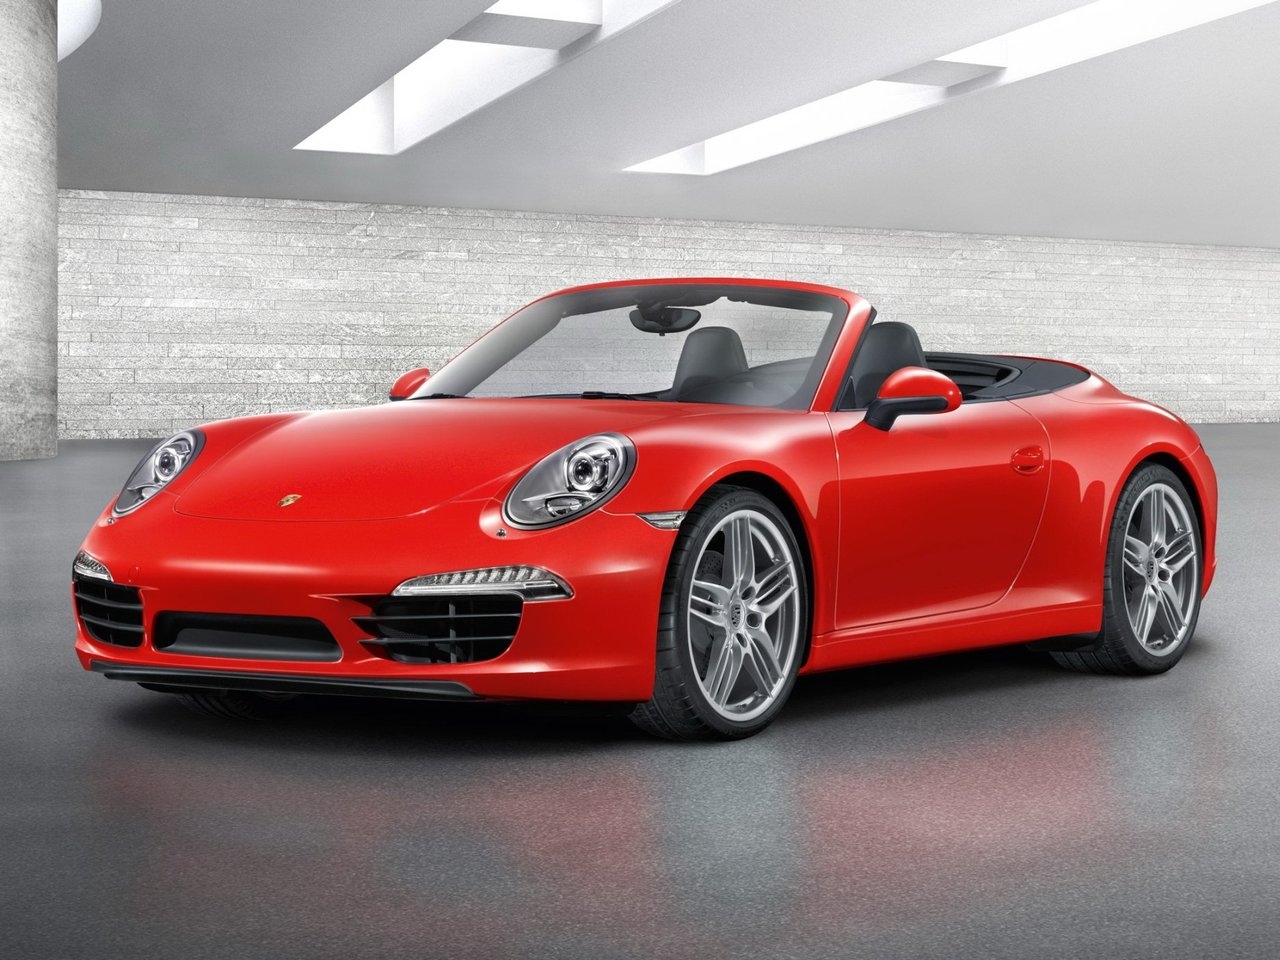 Расход газа четырёх комплектаций кабриолета Porsche 911. Разница стоимости заправки газом и бензином. Автономный пробег до и после установки ГБО.